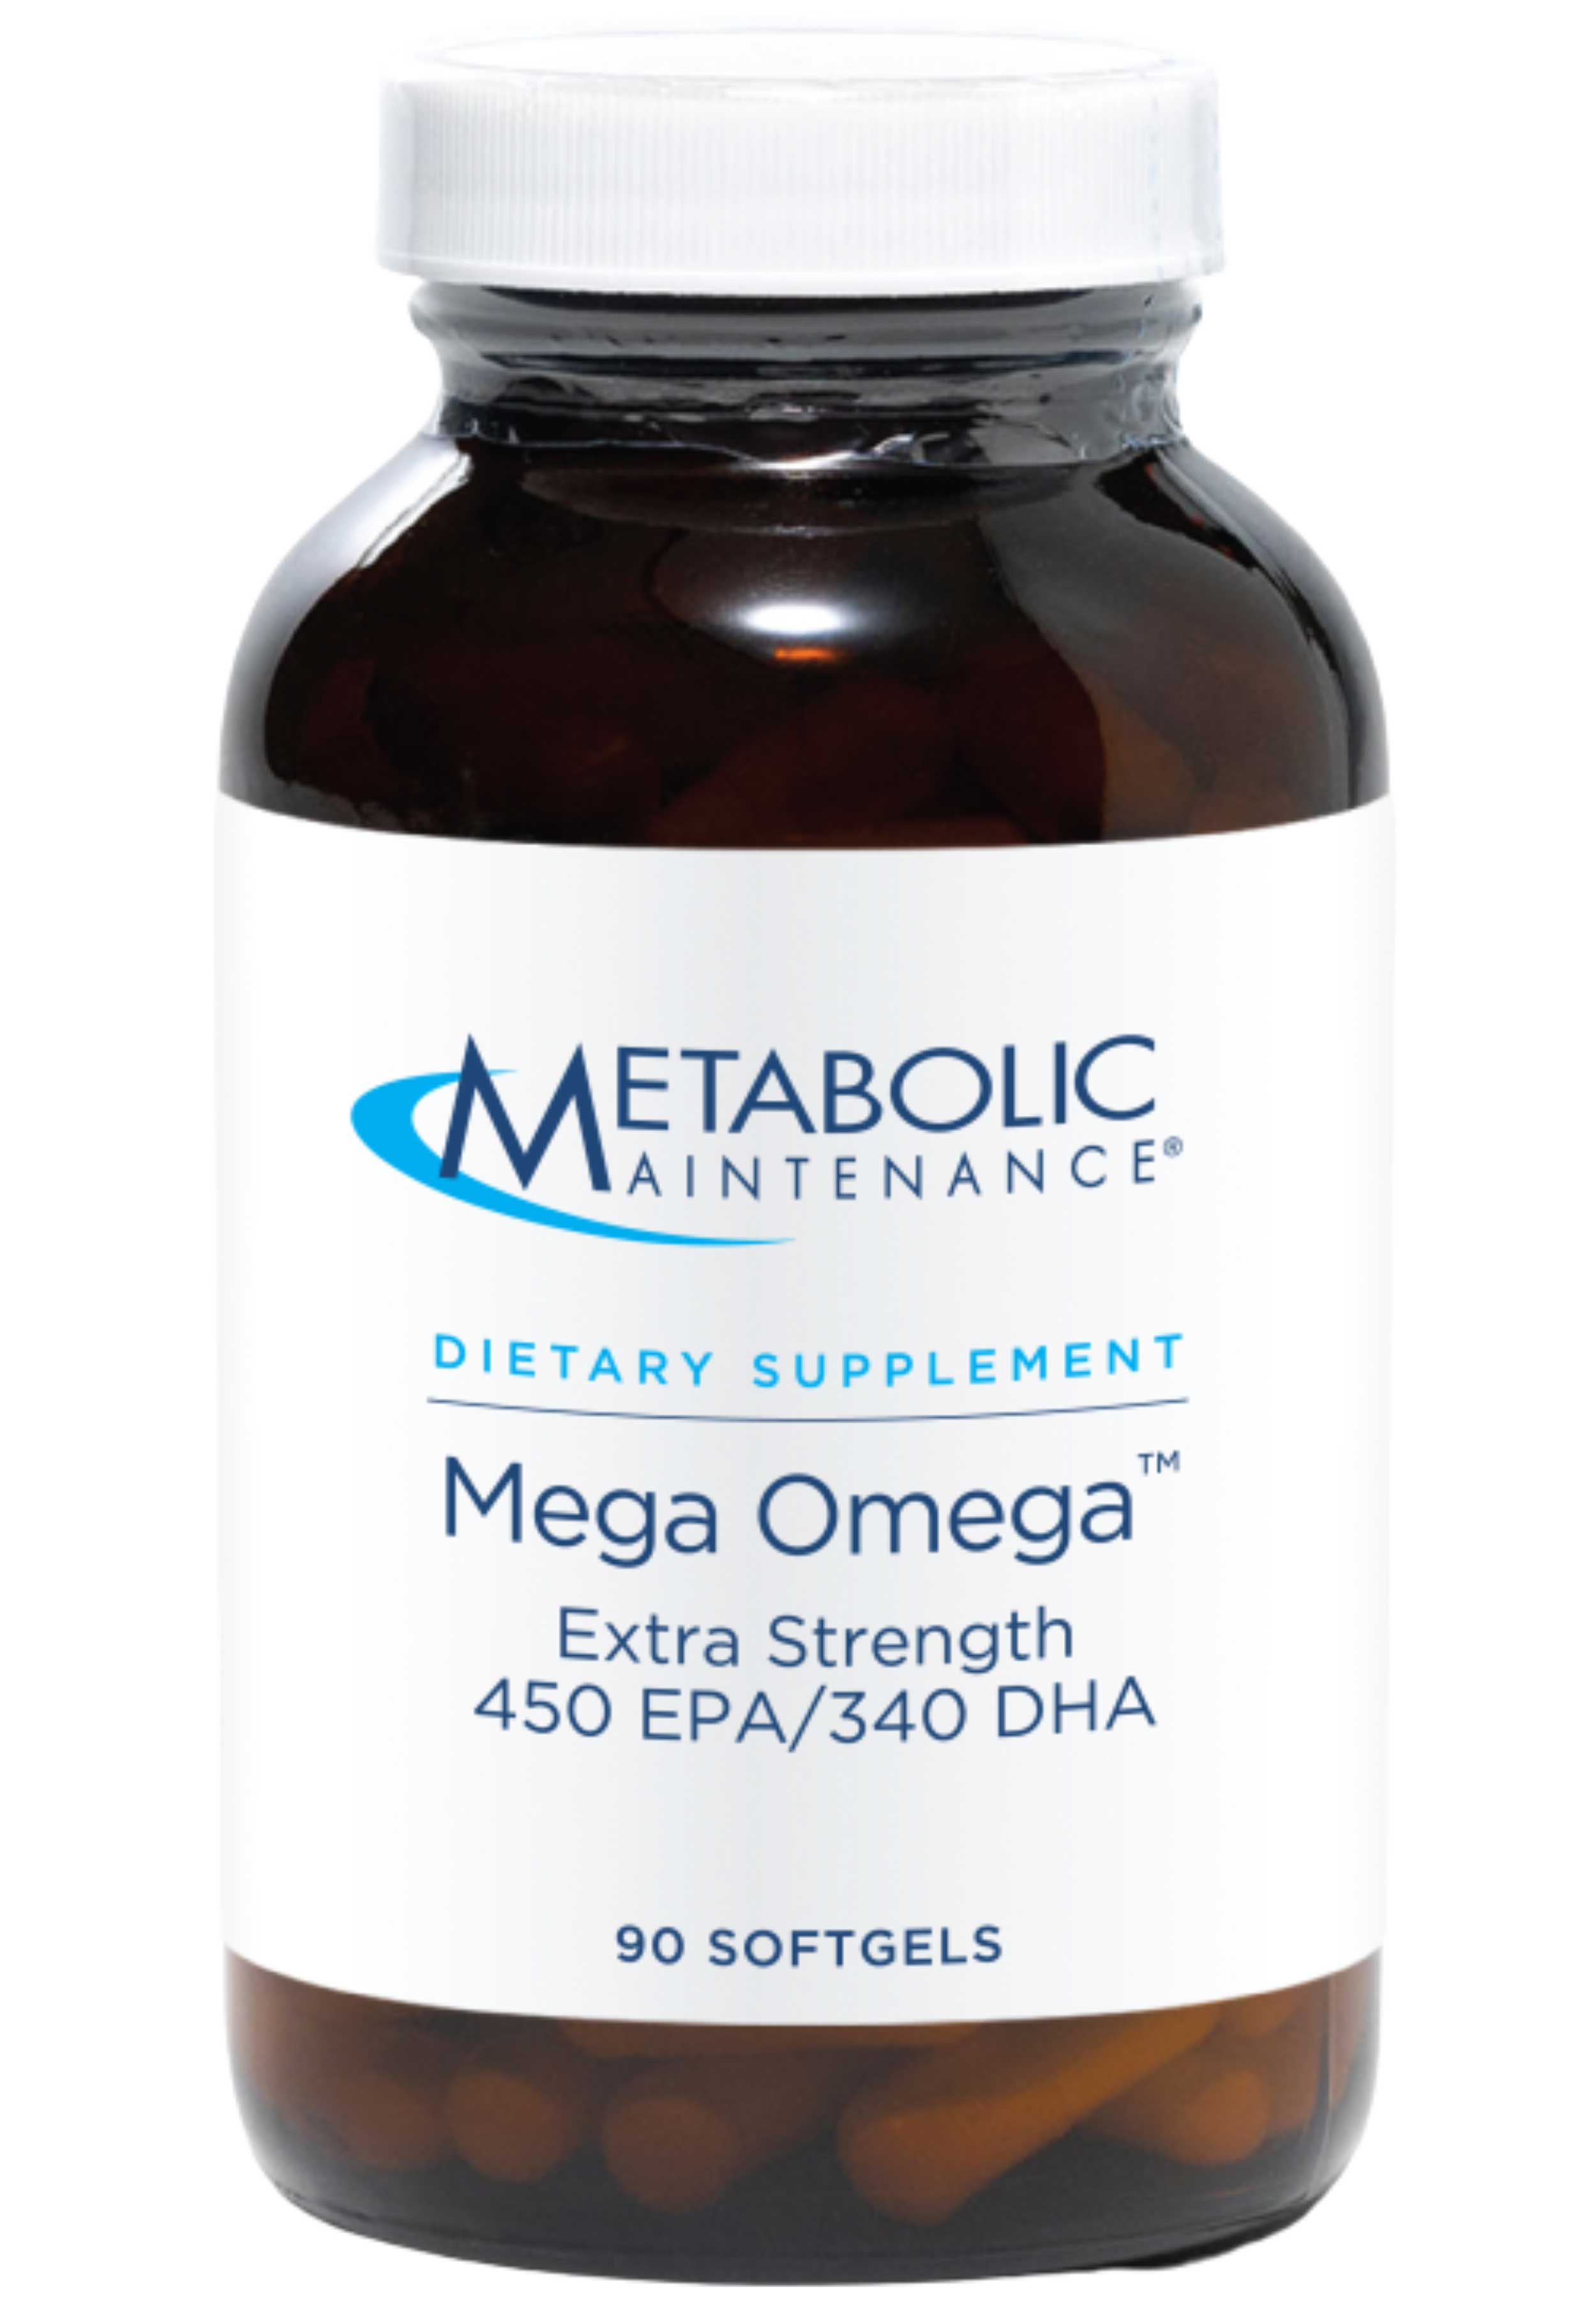 Metabolic Maintenance Mega Omega Extra Strength